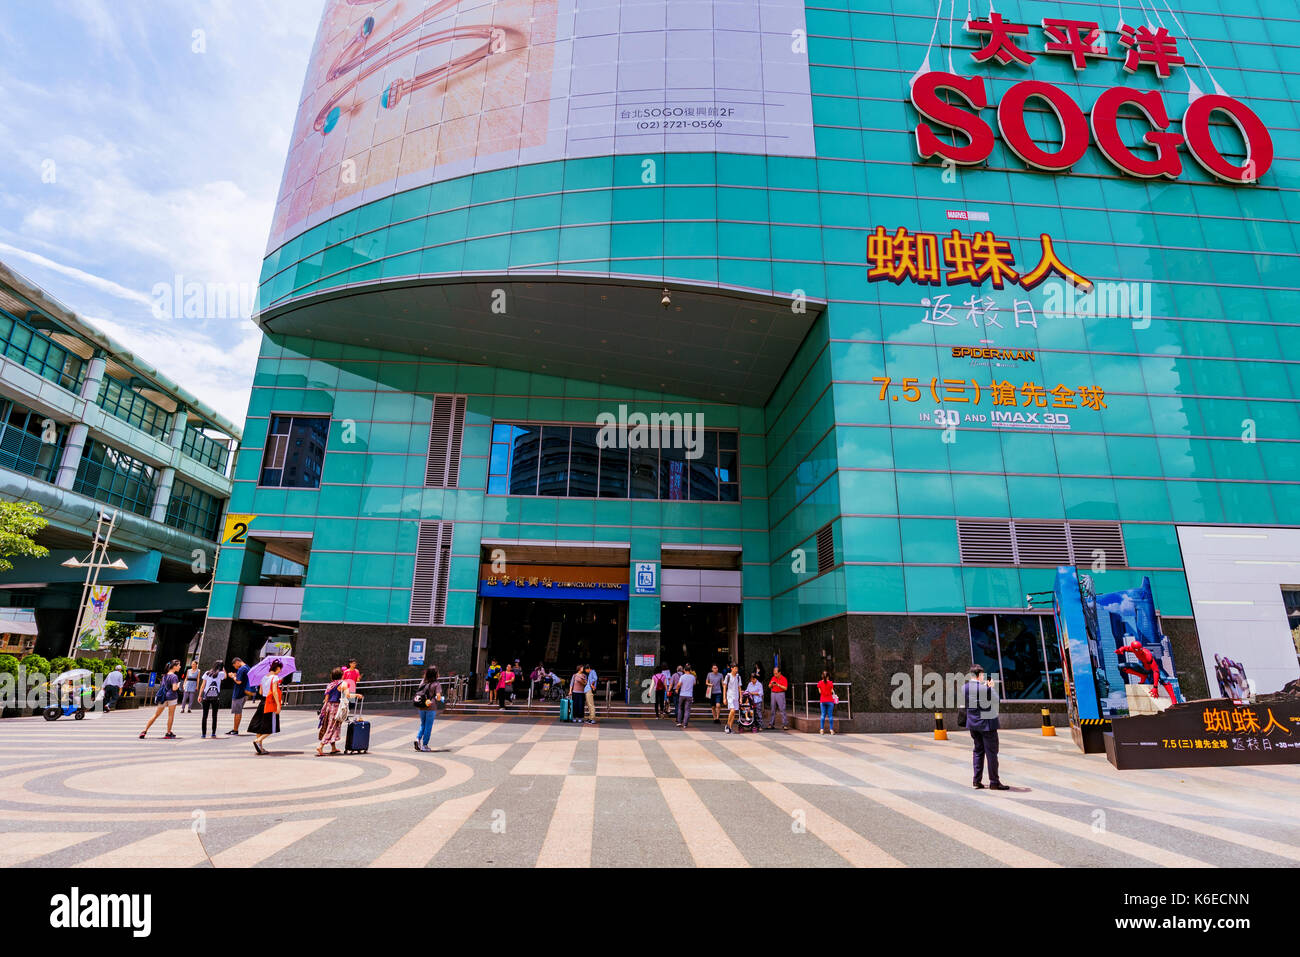 Taipei, Taiwan - 27 giugno: questo è il sogo department store che è un luogo popolare per acquistare articoli di lusso nel centro di Zhongxiao Fuxing area o Foto Stock